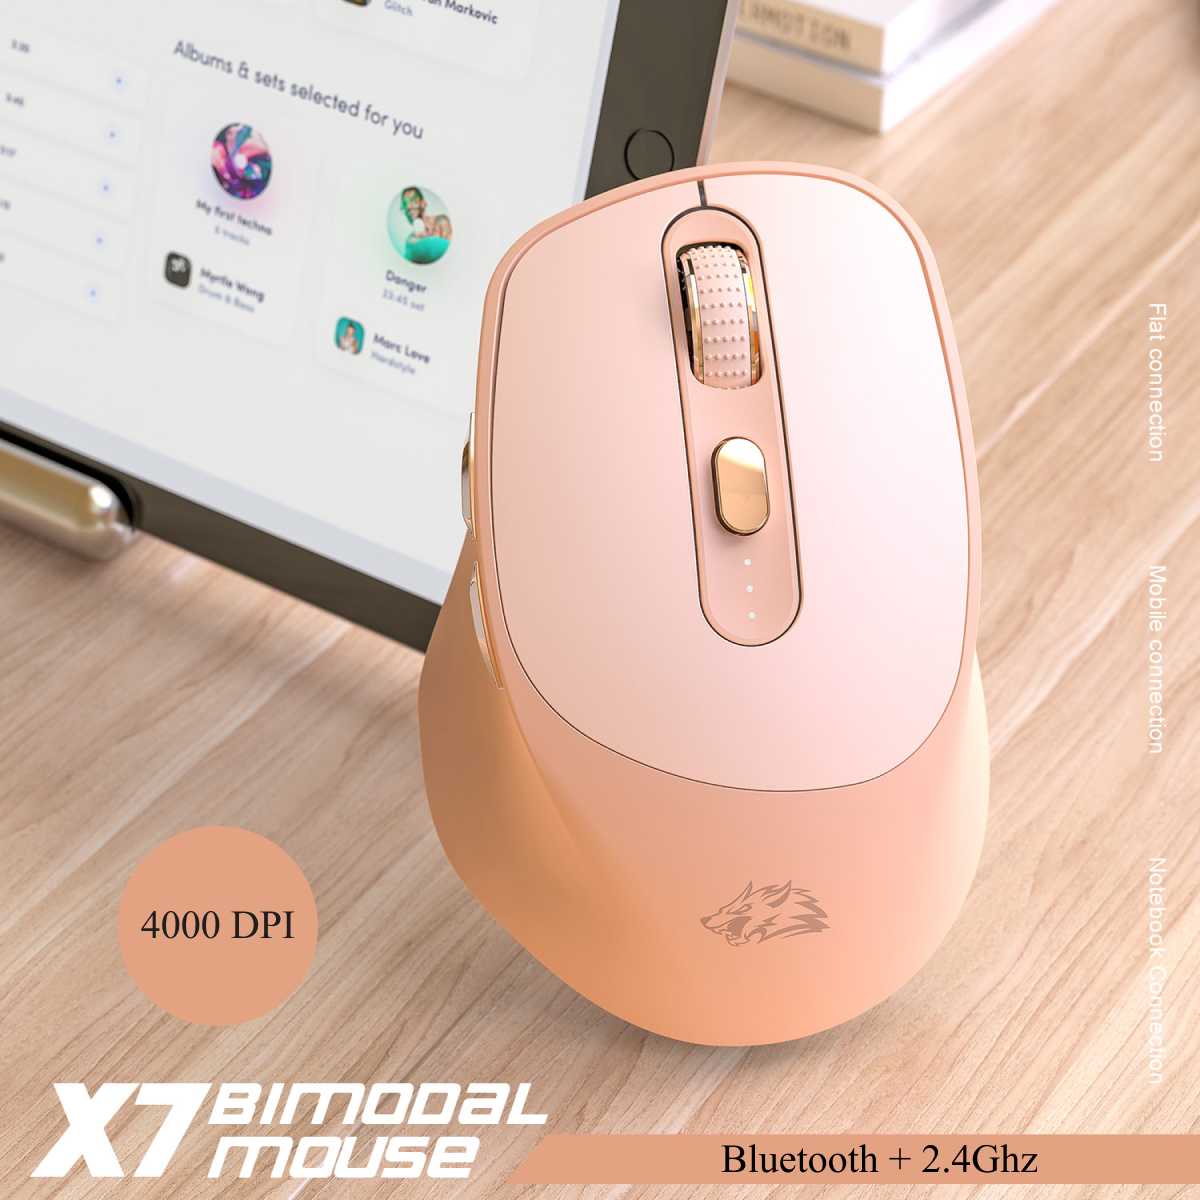 Беспроводная мышка Wolf X7 Bluetooth + 2.4G DPI 4000 компьютерная мышь для компьютера с аккумулятором mouse mice Wireless розовая